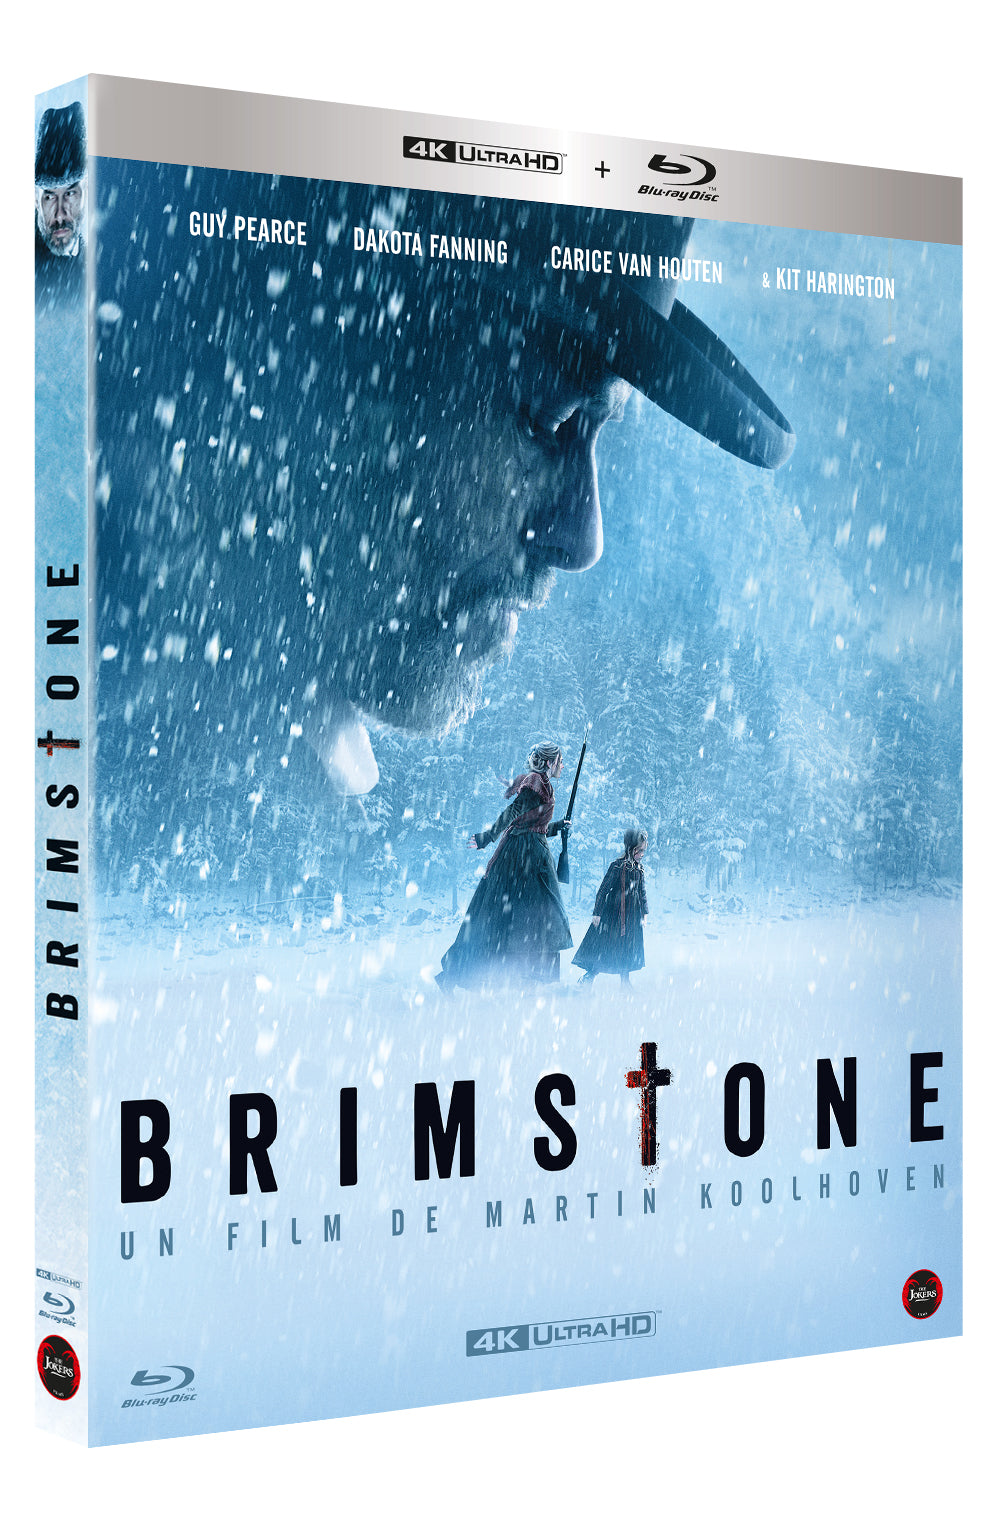 Combo (Blu-Ray 4K + Blu-Ray) "Brimstone"